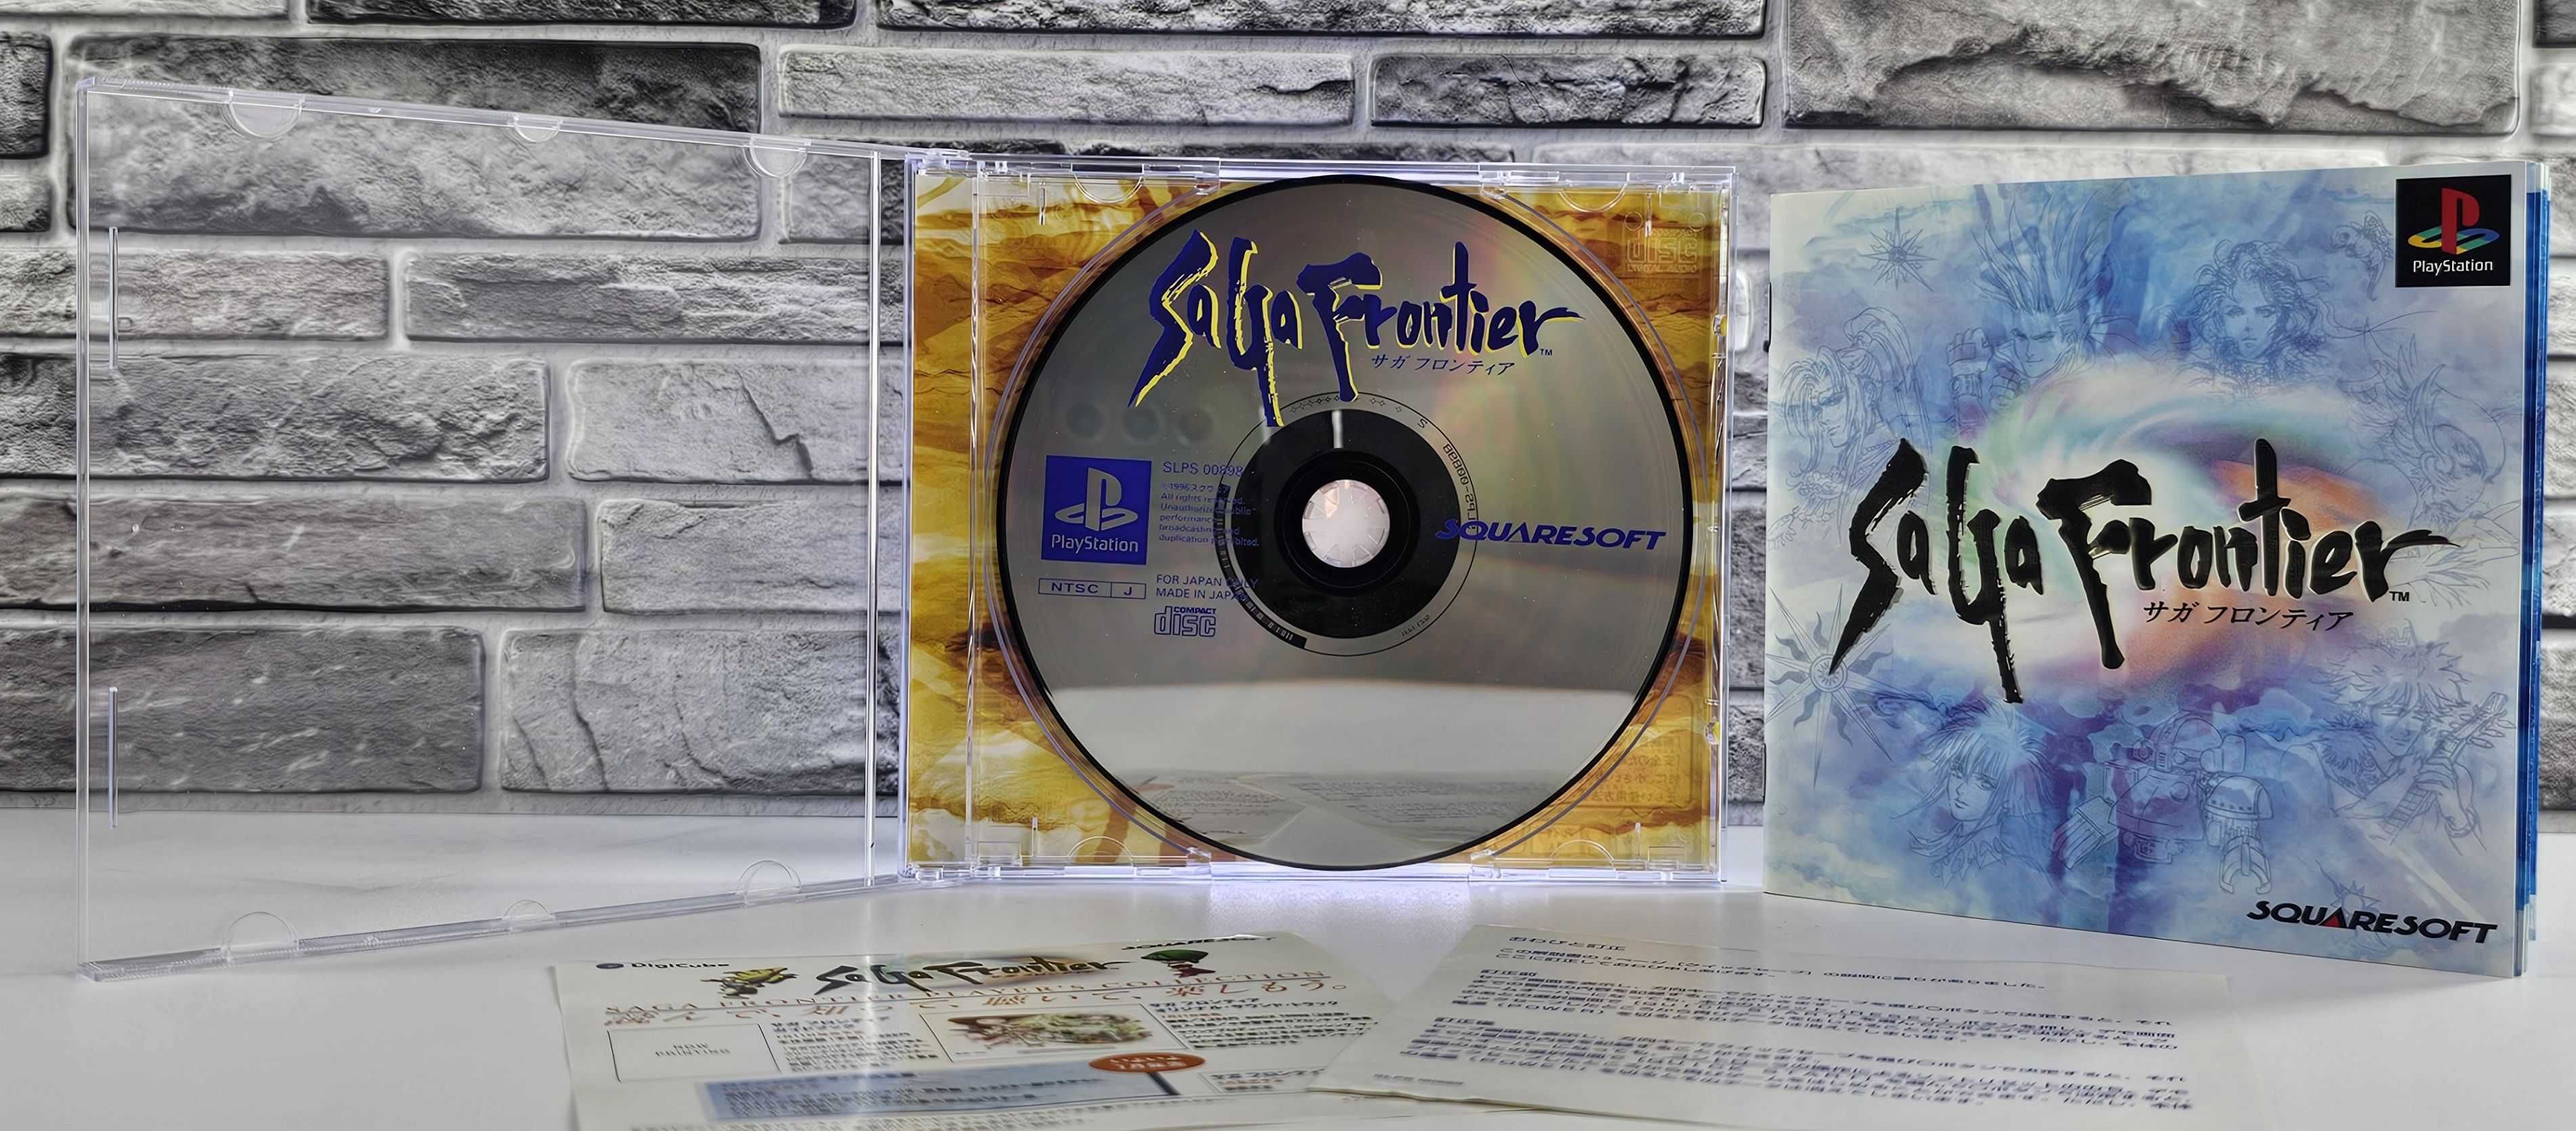 Playstation Saga Frontier  ! weekendowa promocja